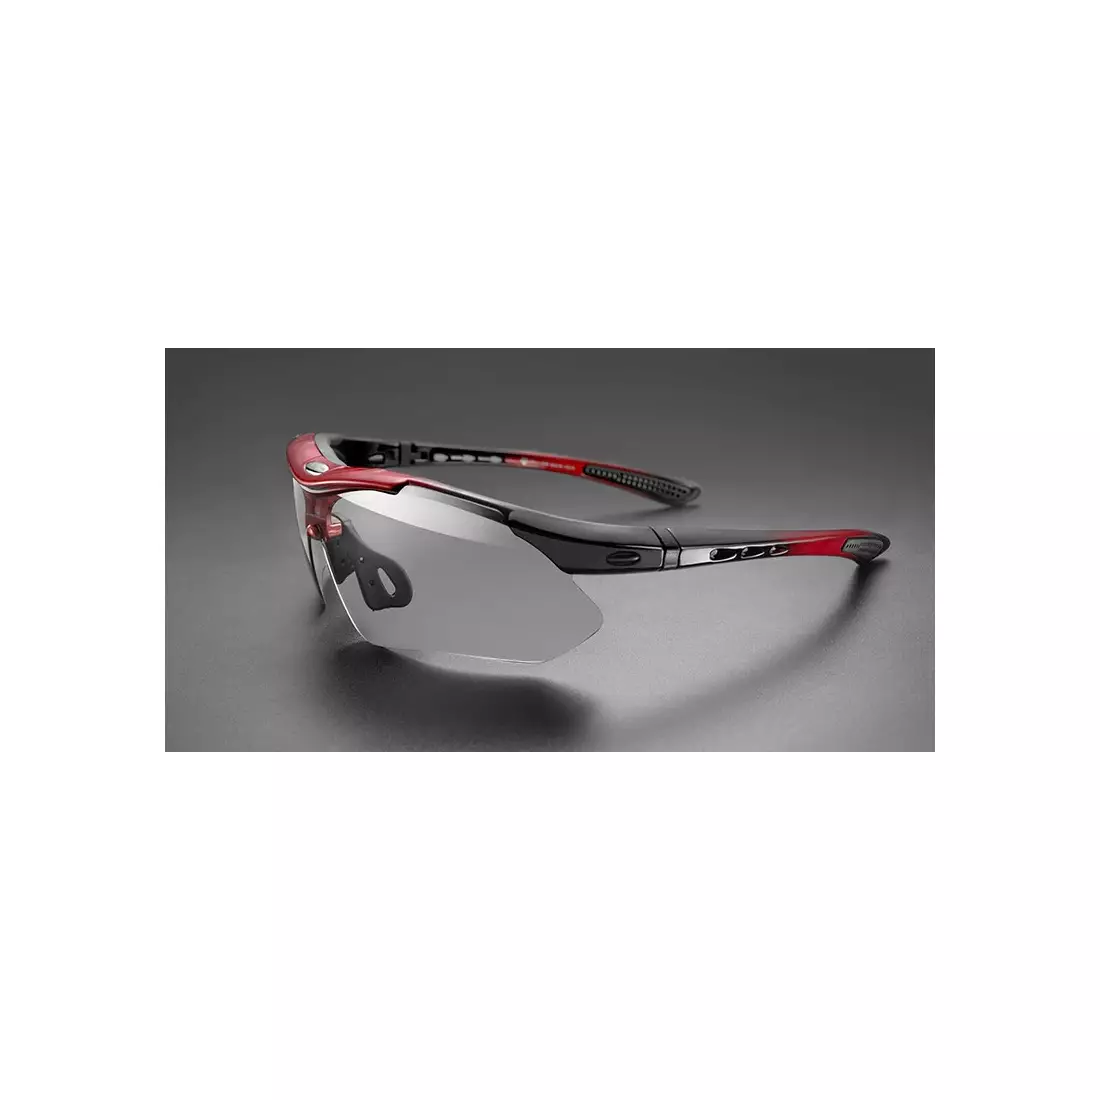 Rockbros sportovní brýle s fotochromatickou + korekční vložkou red 10141